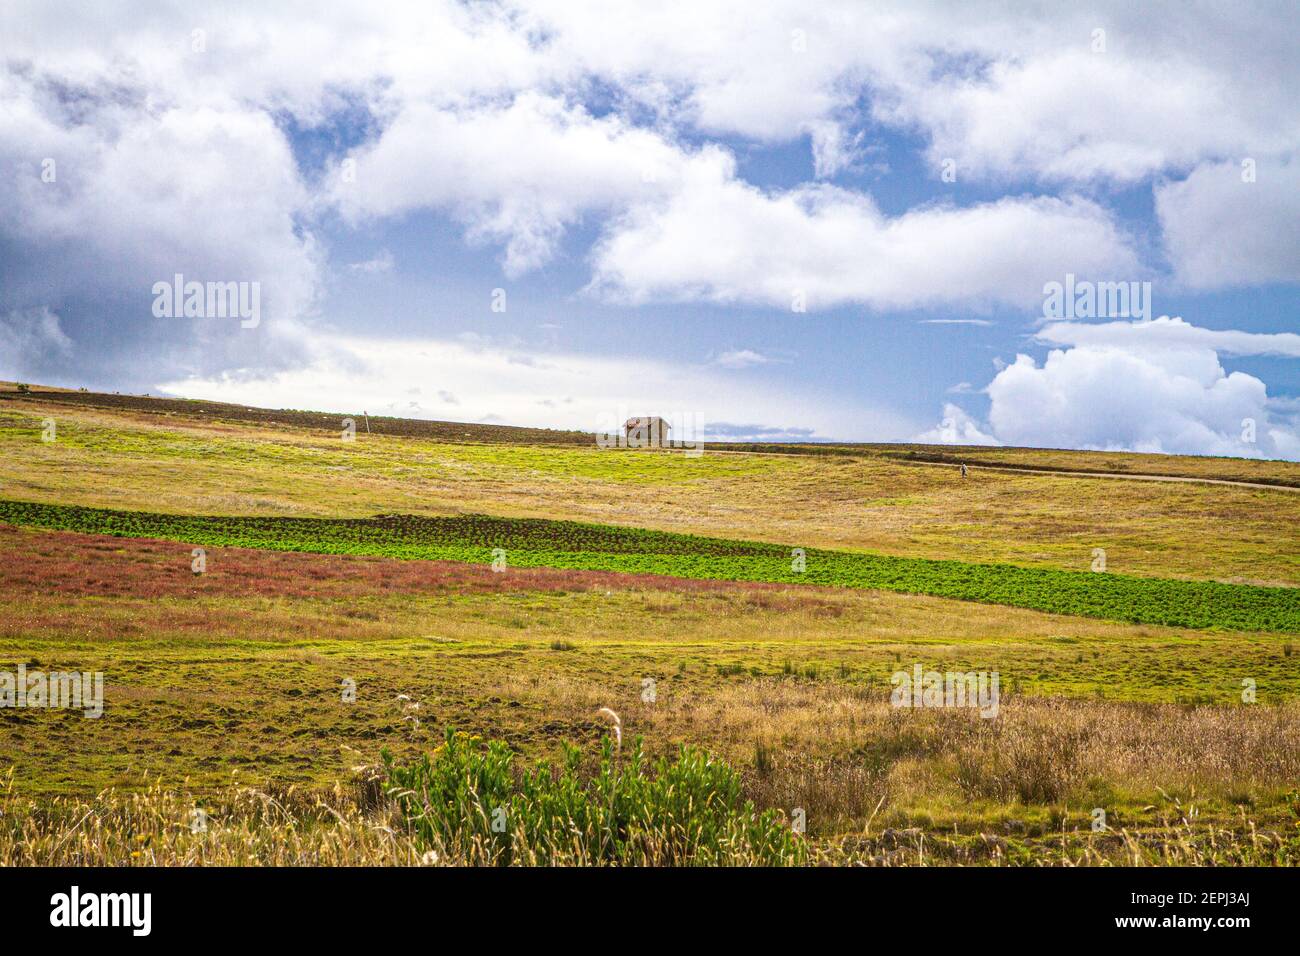 Terreni agricoli verdi, Casa agricola bianca, con bestiame, cielo grigio Ande colombiane, Dipartimento di Boyacá, Colombia, Sud America Foto Stock